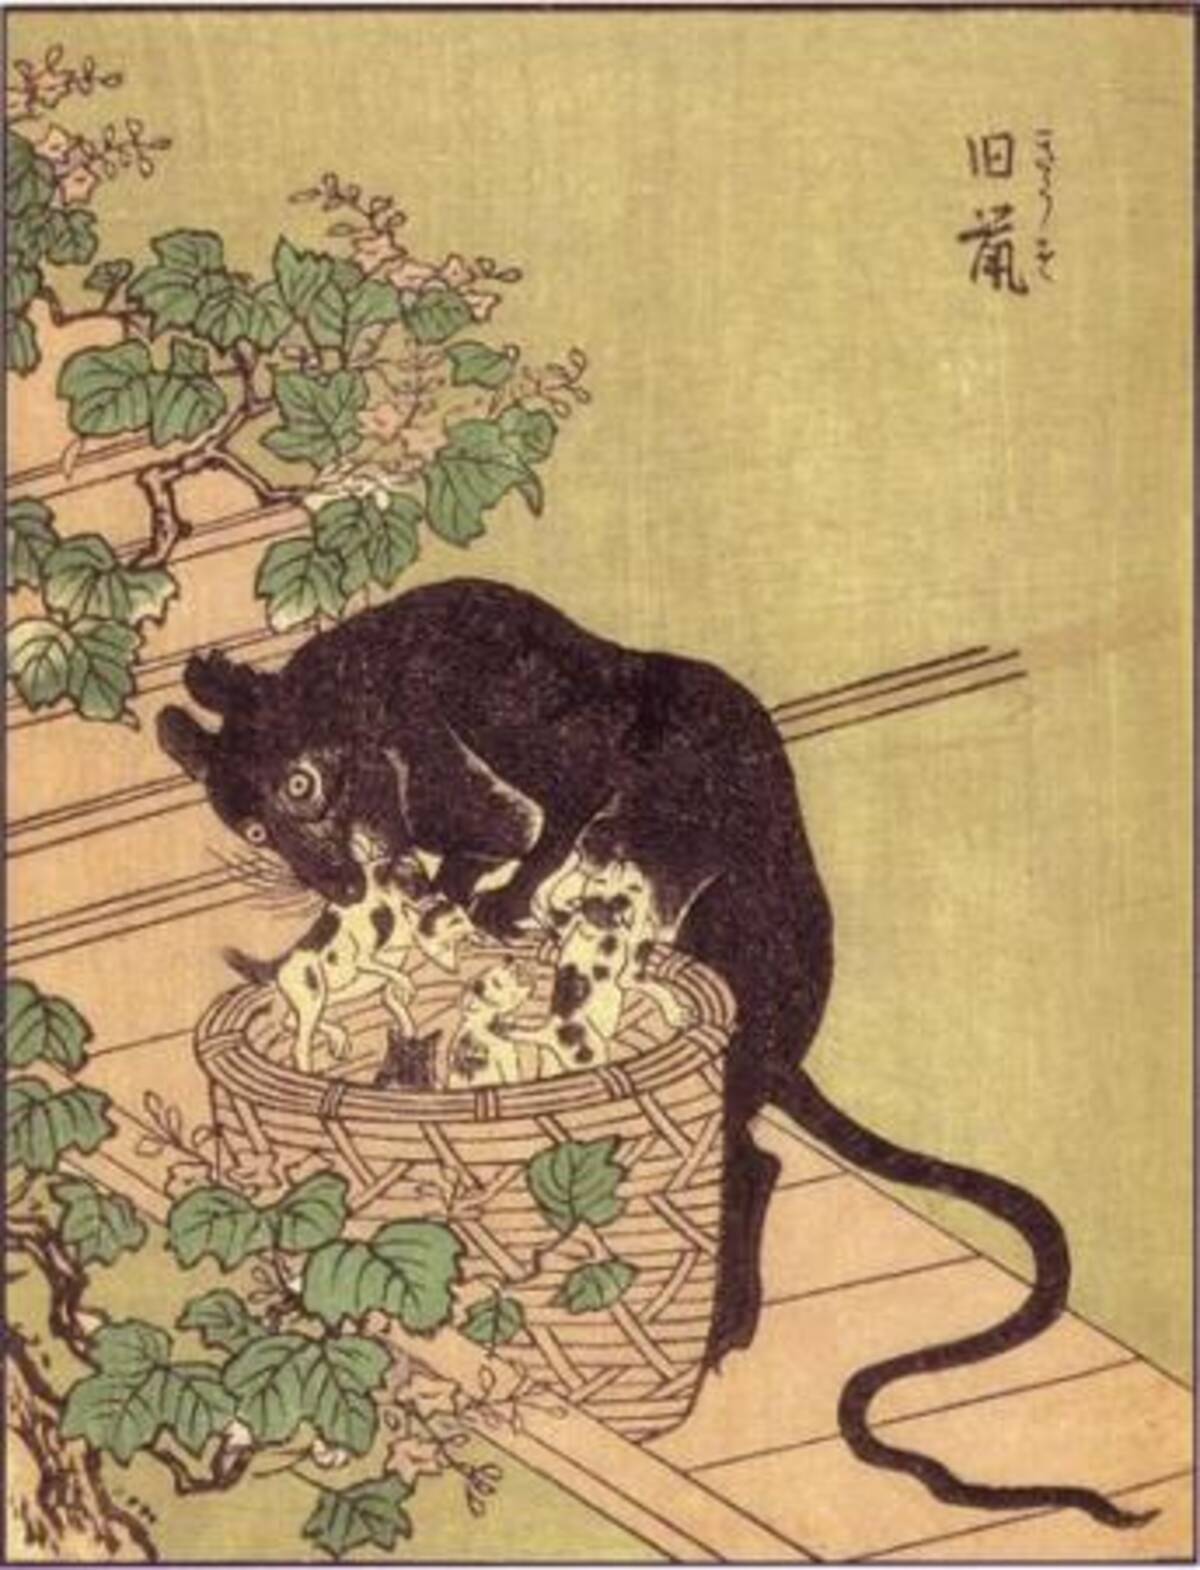 ネズミバーガー の元ネタ 巨大ネズミは昔から日本に 12年9月18日 エキサイトニュース